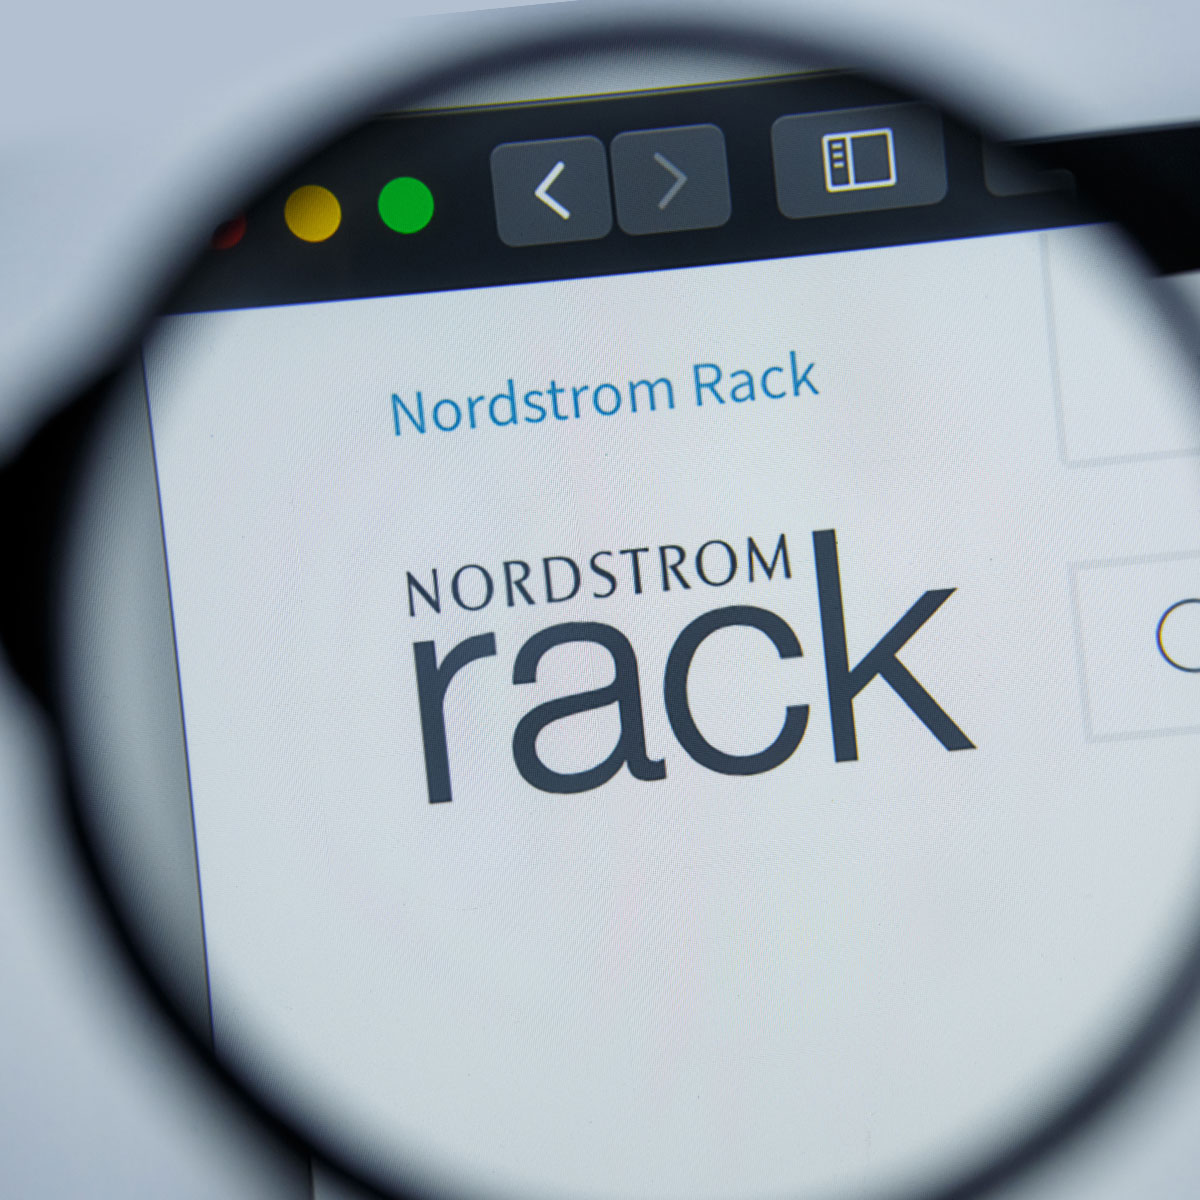 Let's Go To The Rack! @Nordstrom Rack #shopping #nordstromrack #shoppi